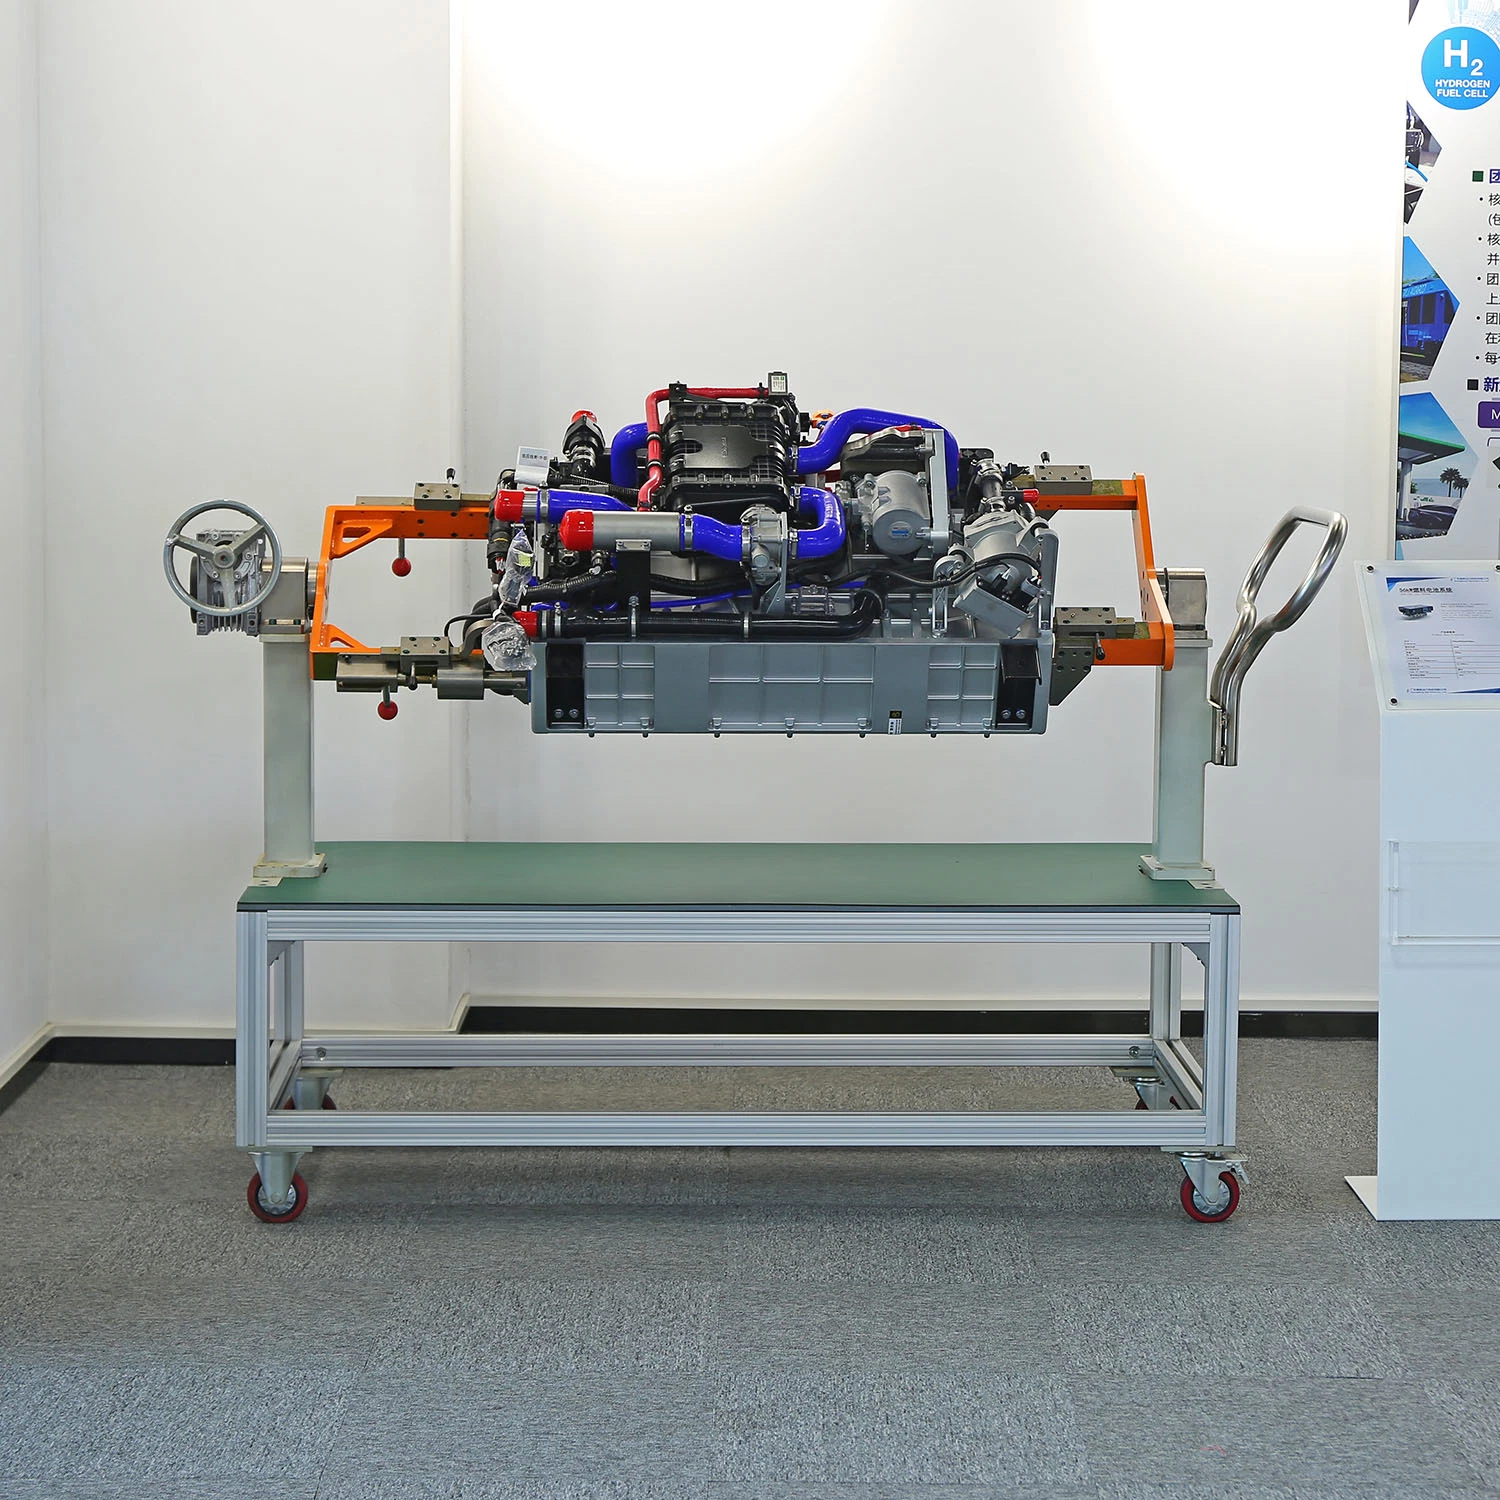 Hydrogène système d'alimentation du chariot élévateur production d'énergie du compresseur à hydrogène Système de production d'énergie système de combustion d'hydrogène moteur générateur de soutien